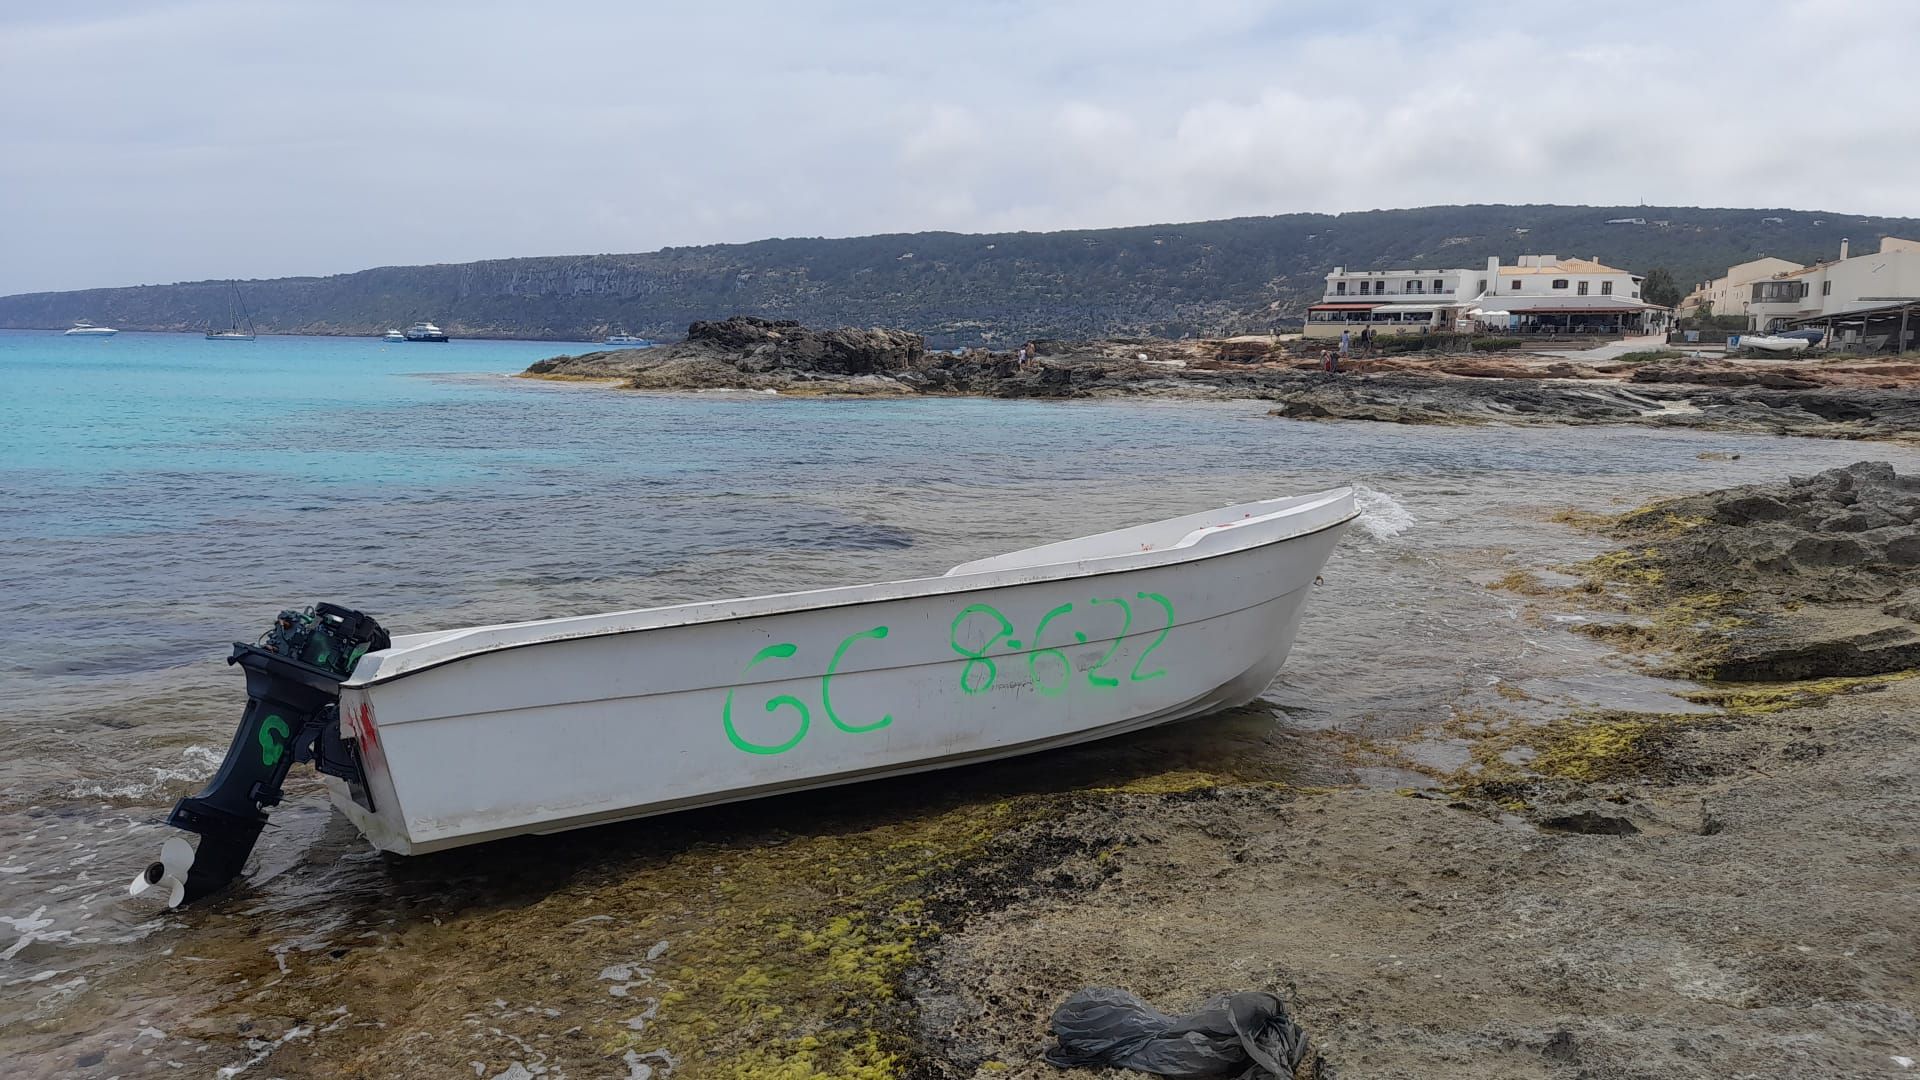 Llega una patera a Formentera con 27 migrantes a bordo